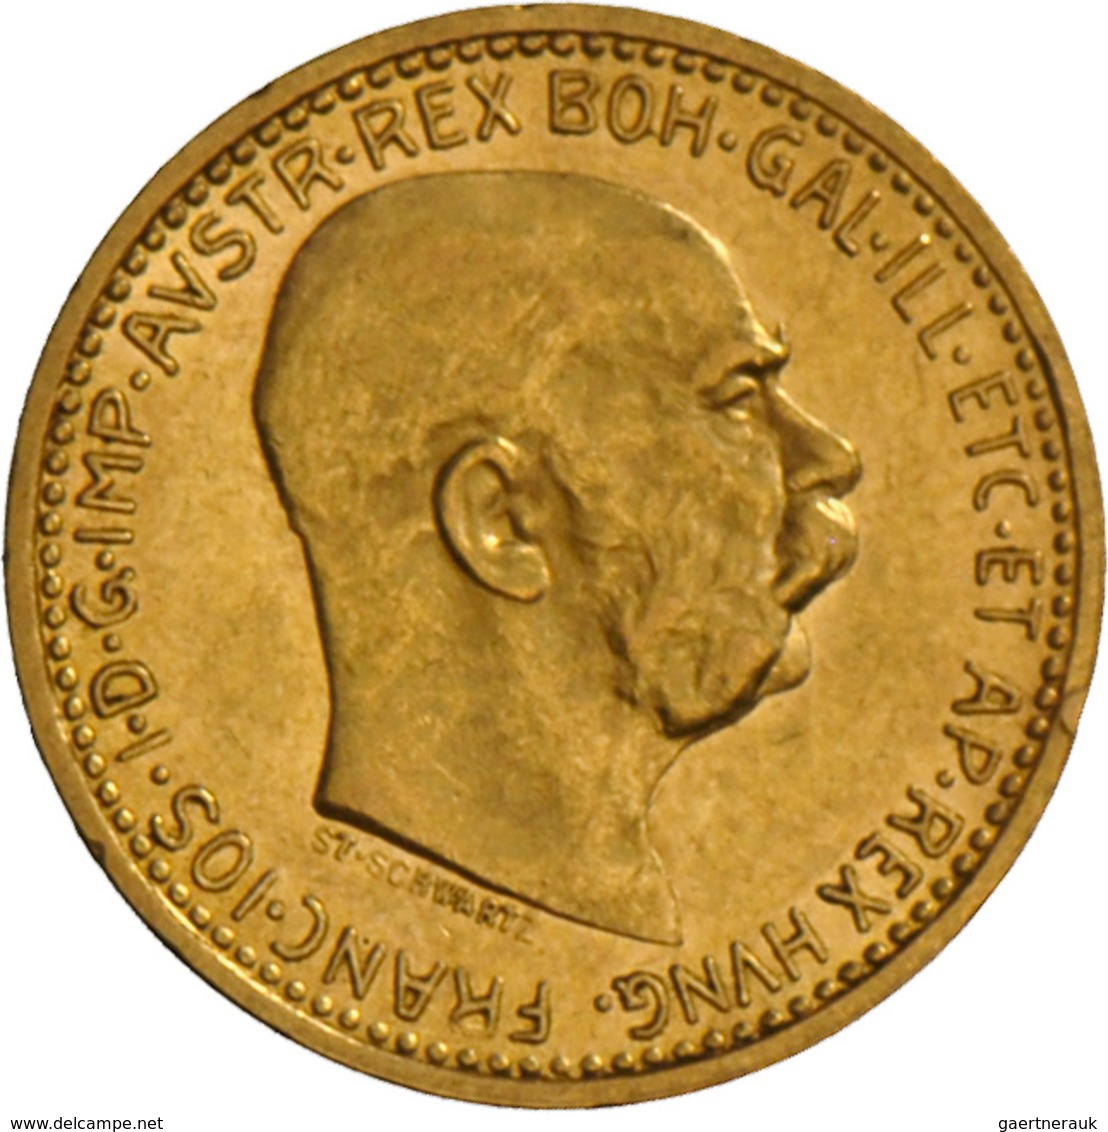 Österreich - Anlagegold: Franz Joseph I. 1848-1916: Lot 5 Goldmünzen: 4 x 10 Kronen (a 3,37 g 900/10